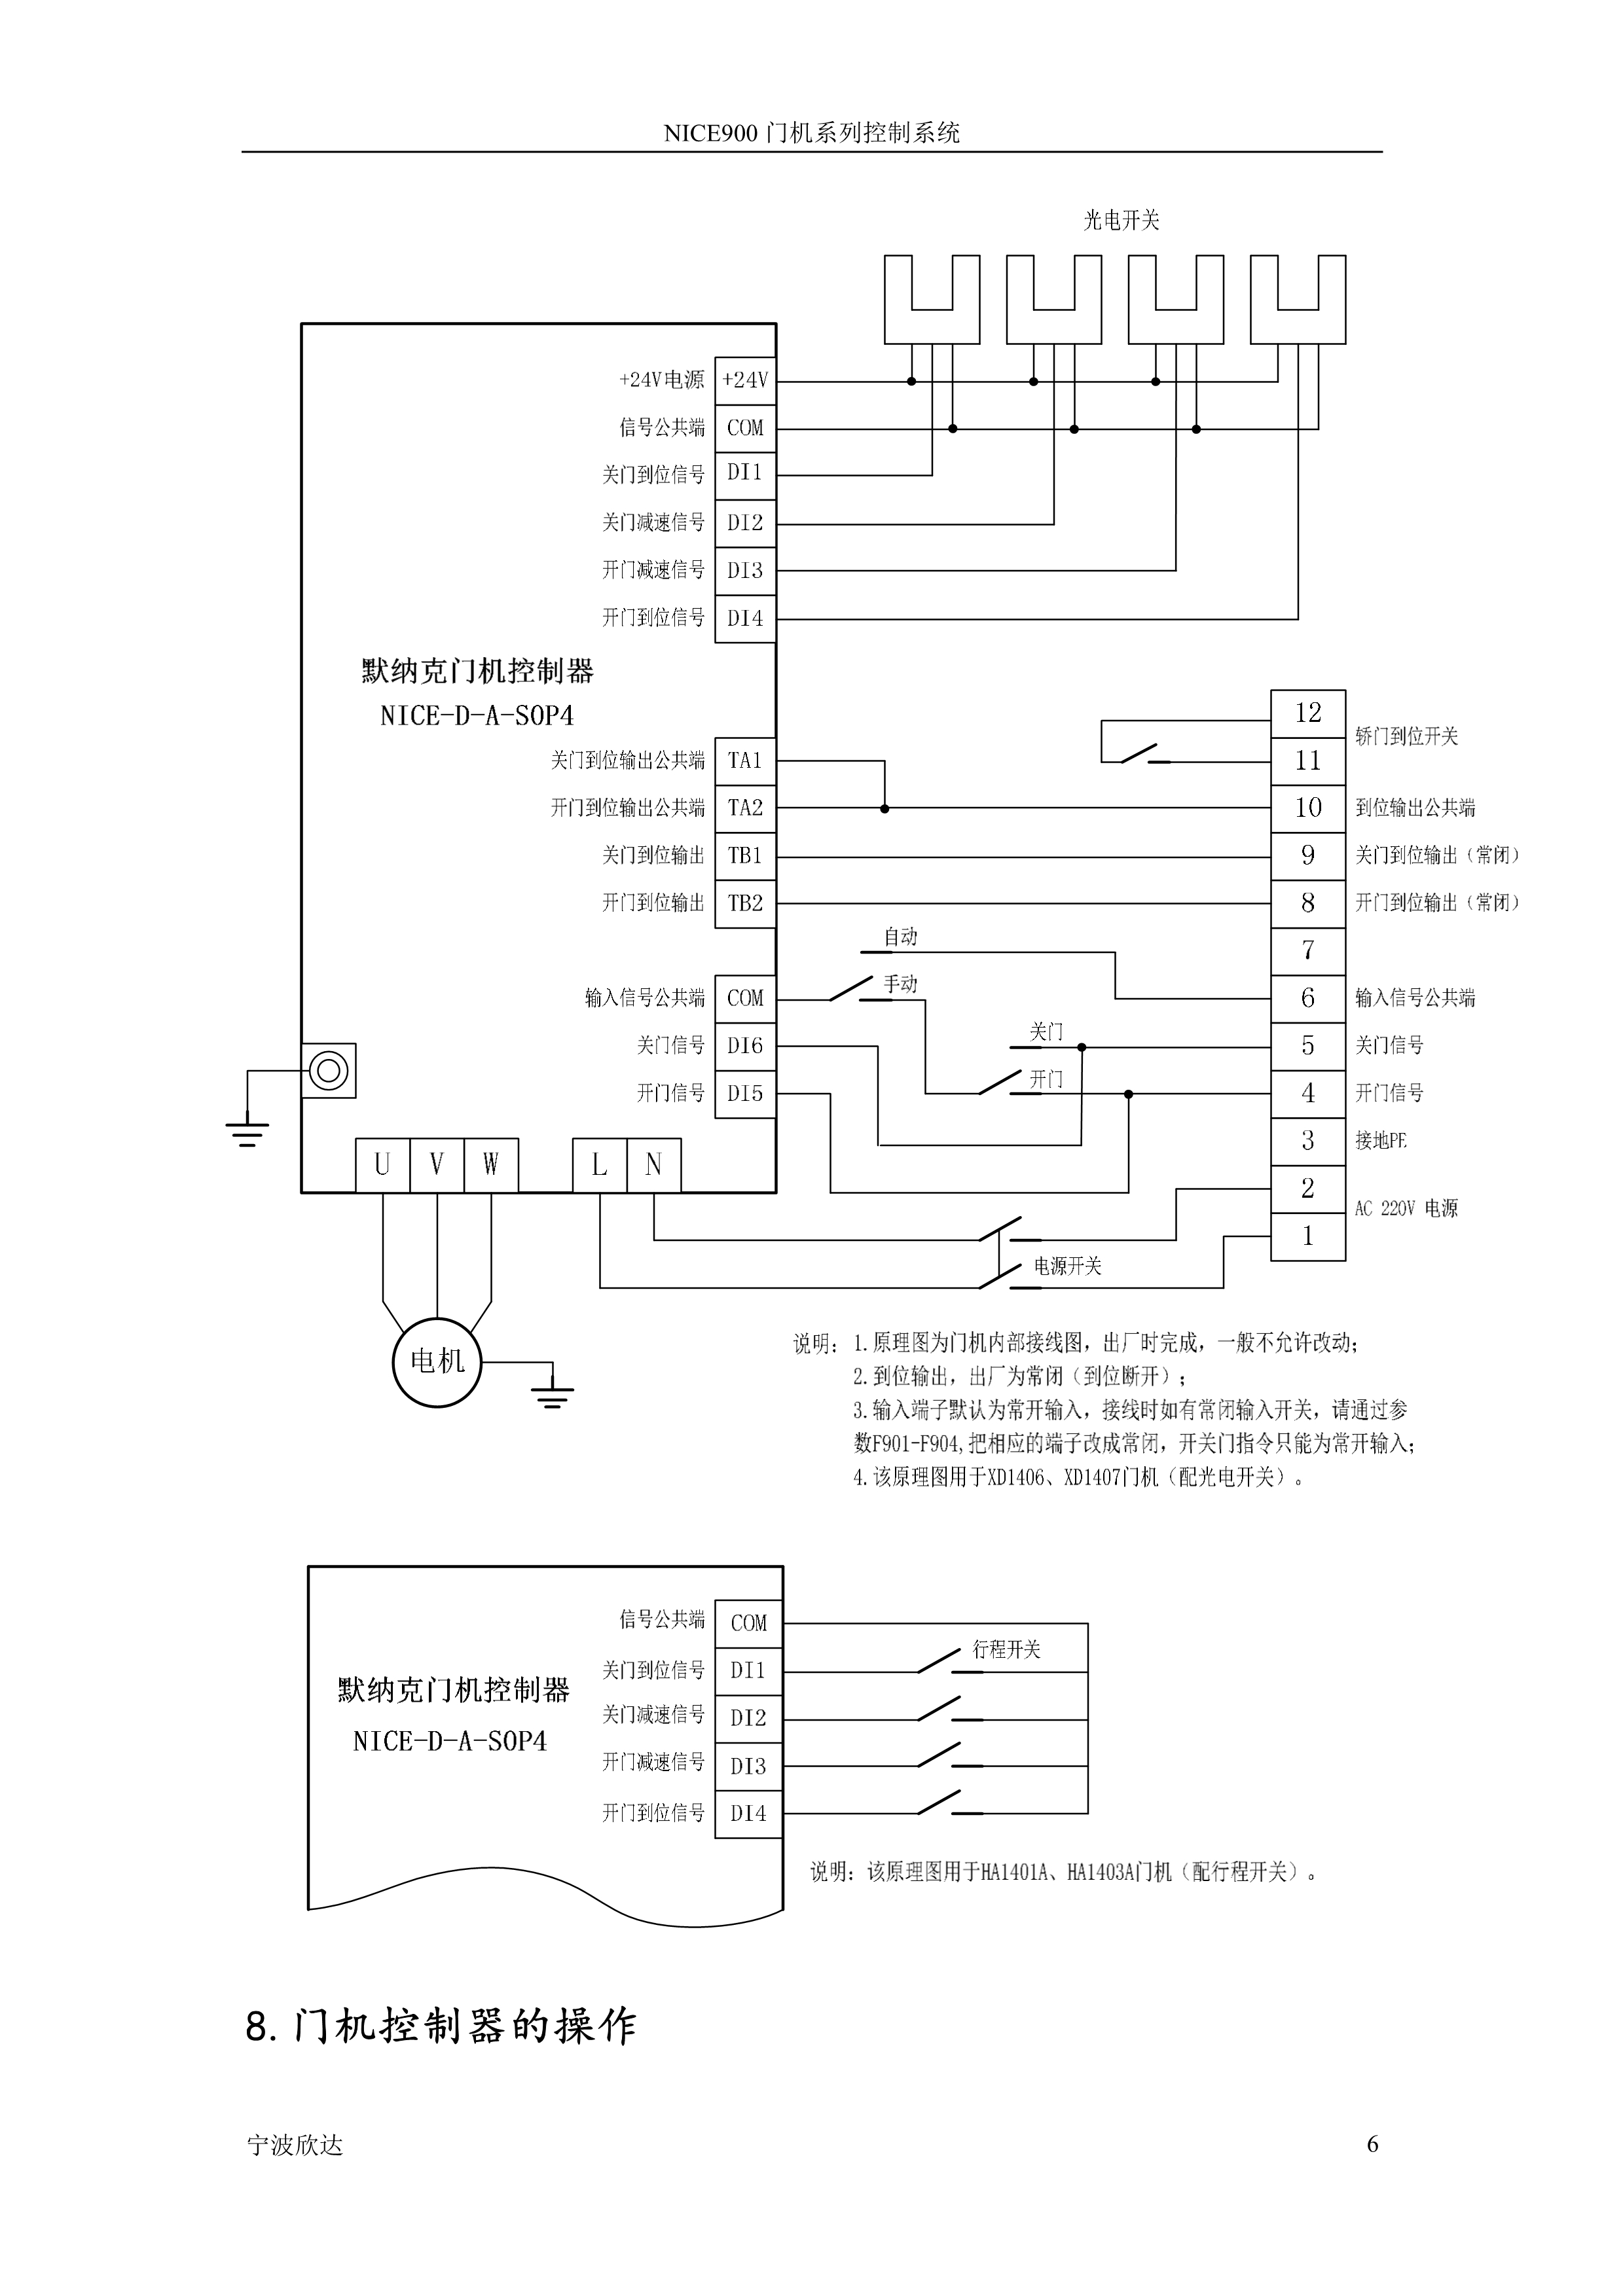 门机变频器默纳克NICE900说明书_7.jpg